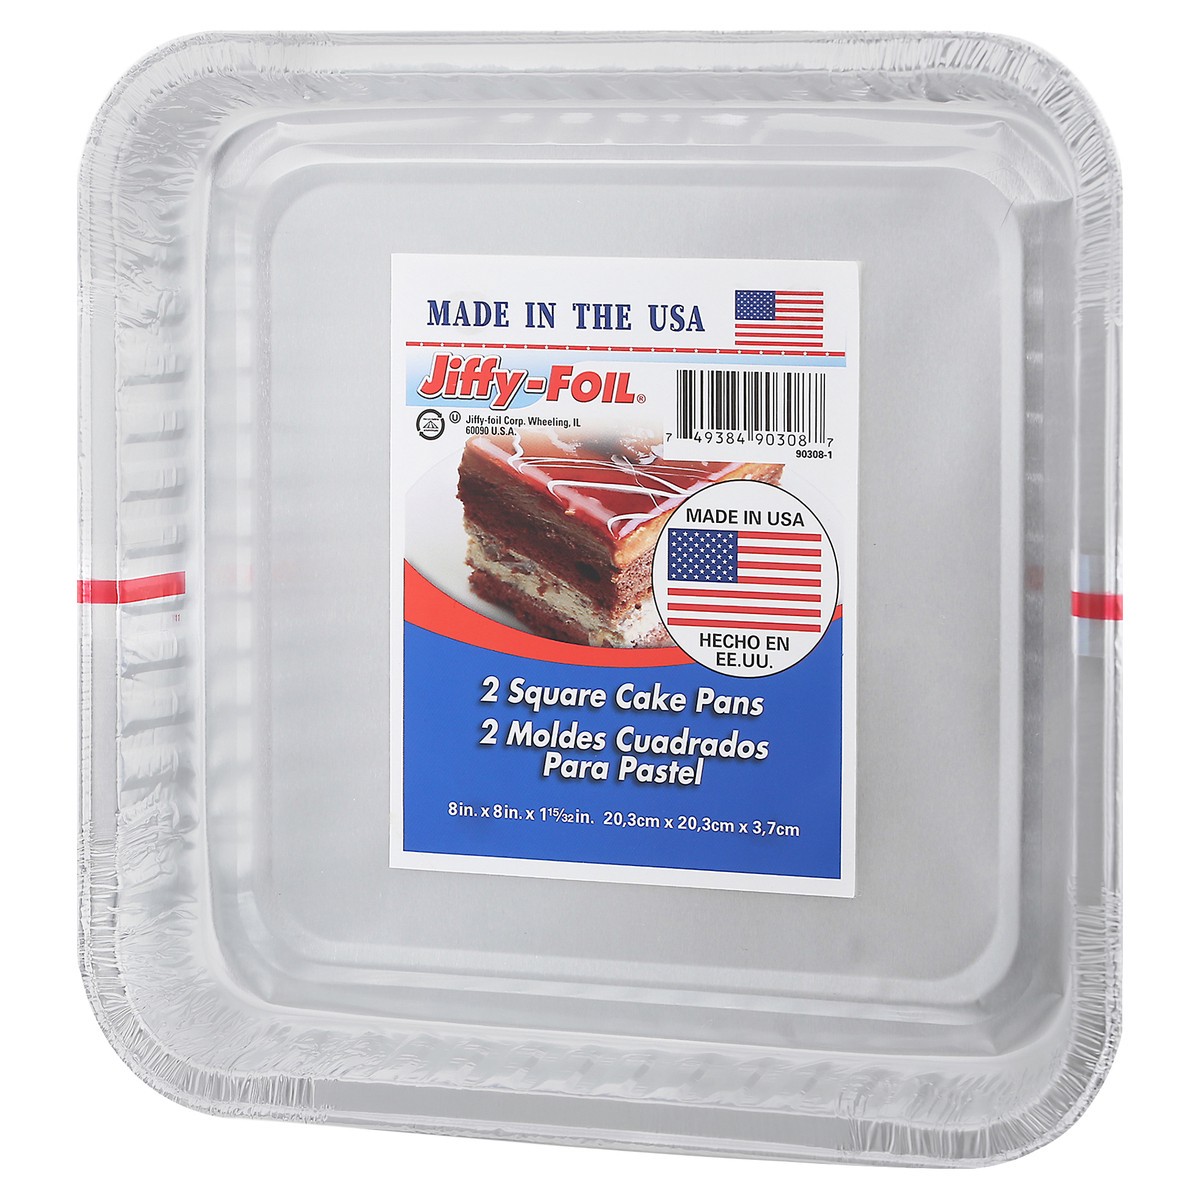 slide 4 of 11, Jiffy-Foil Home Select Jiffy 8' Square Cake Pan, 2 ct